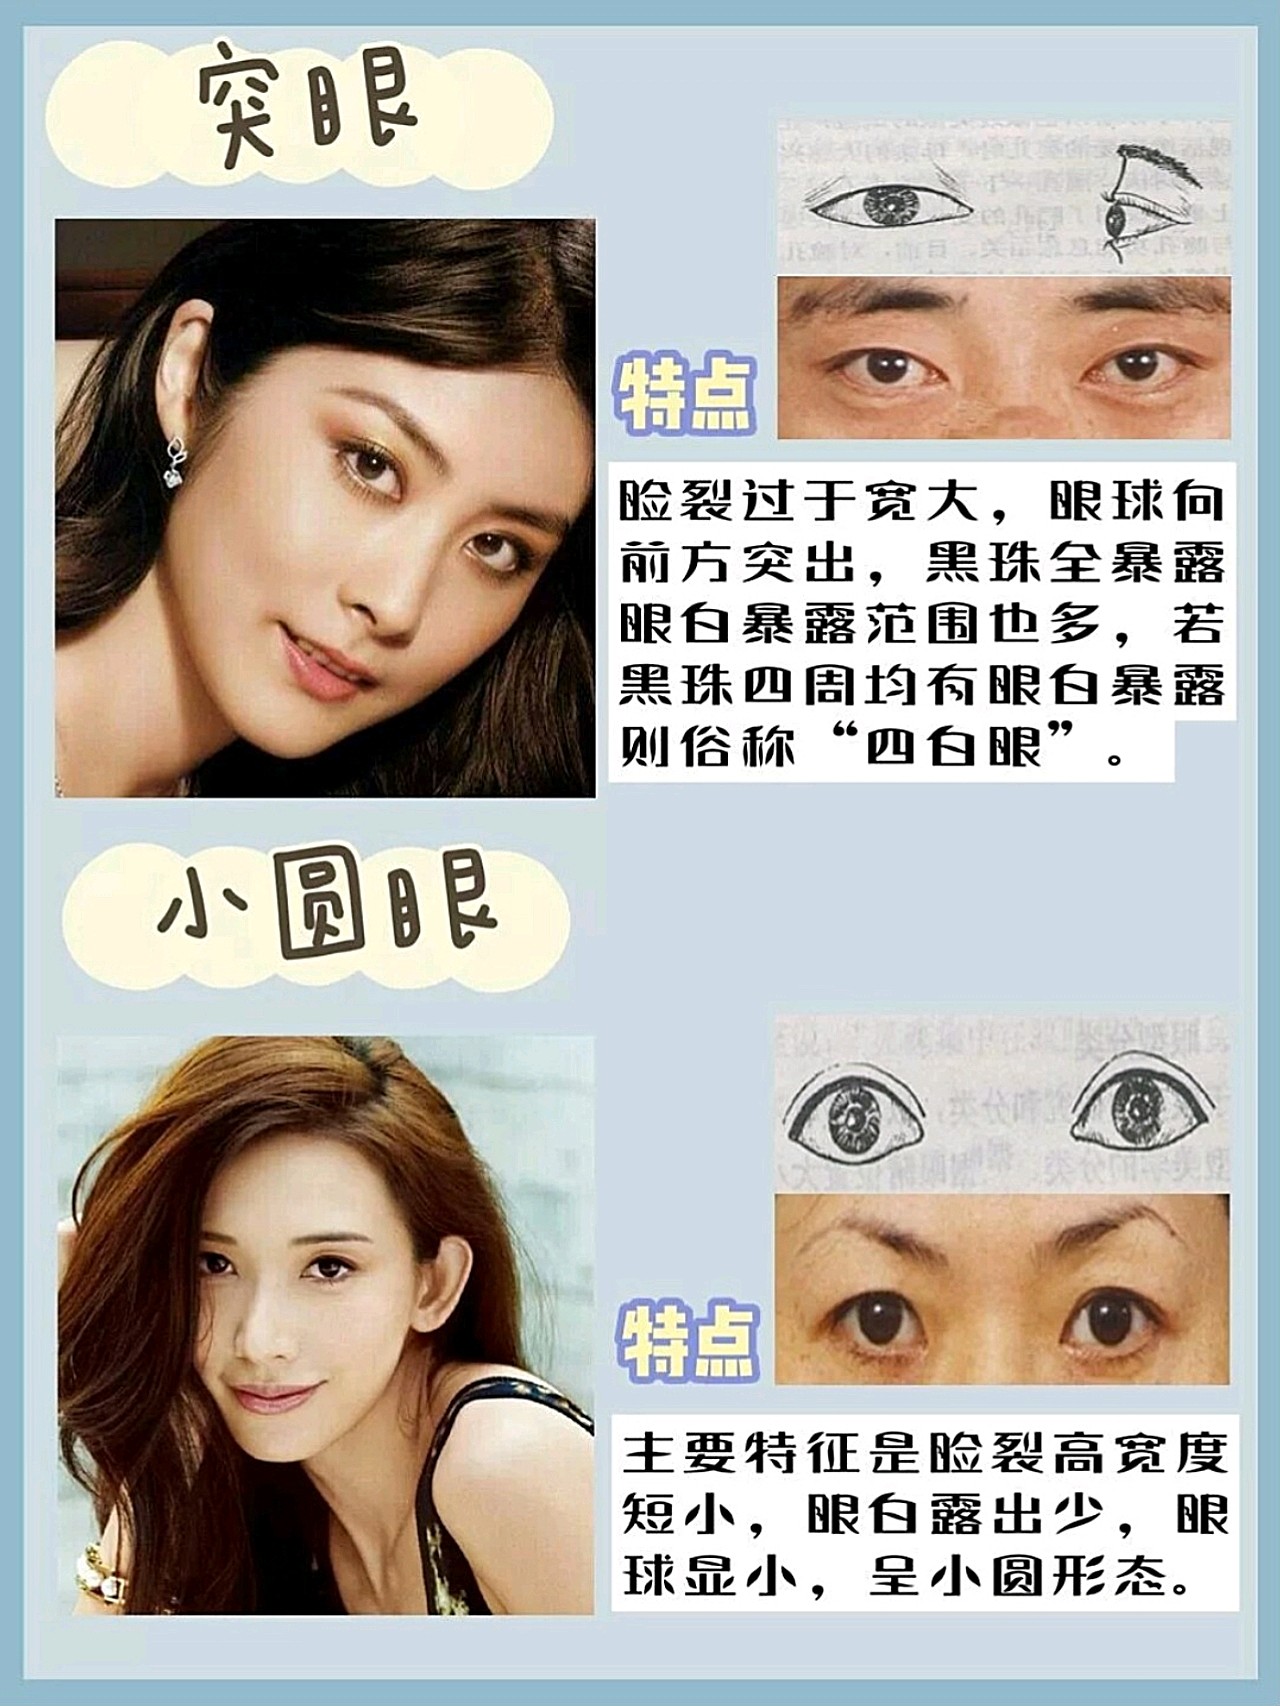 不同眼型 分类图片